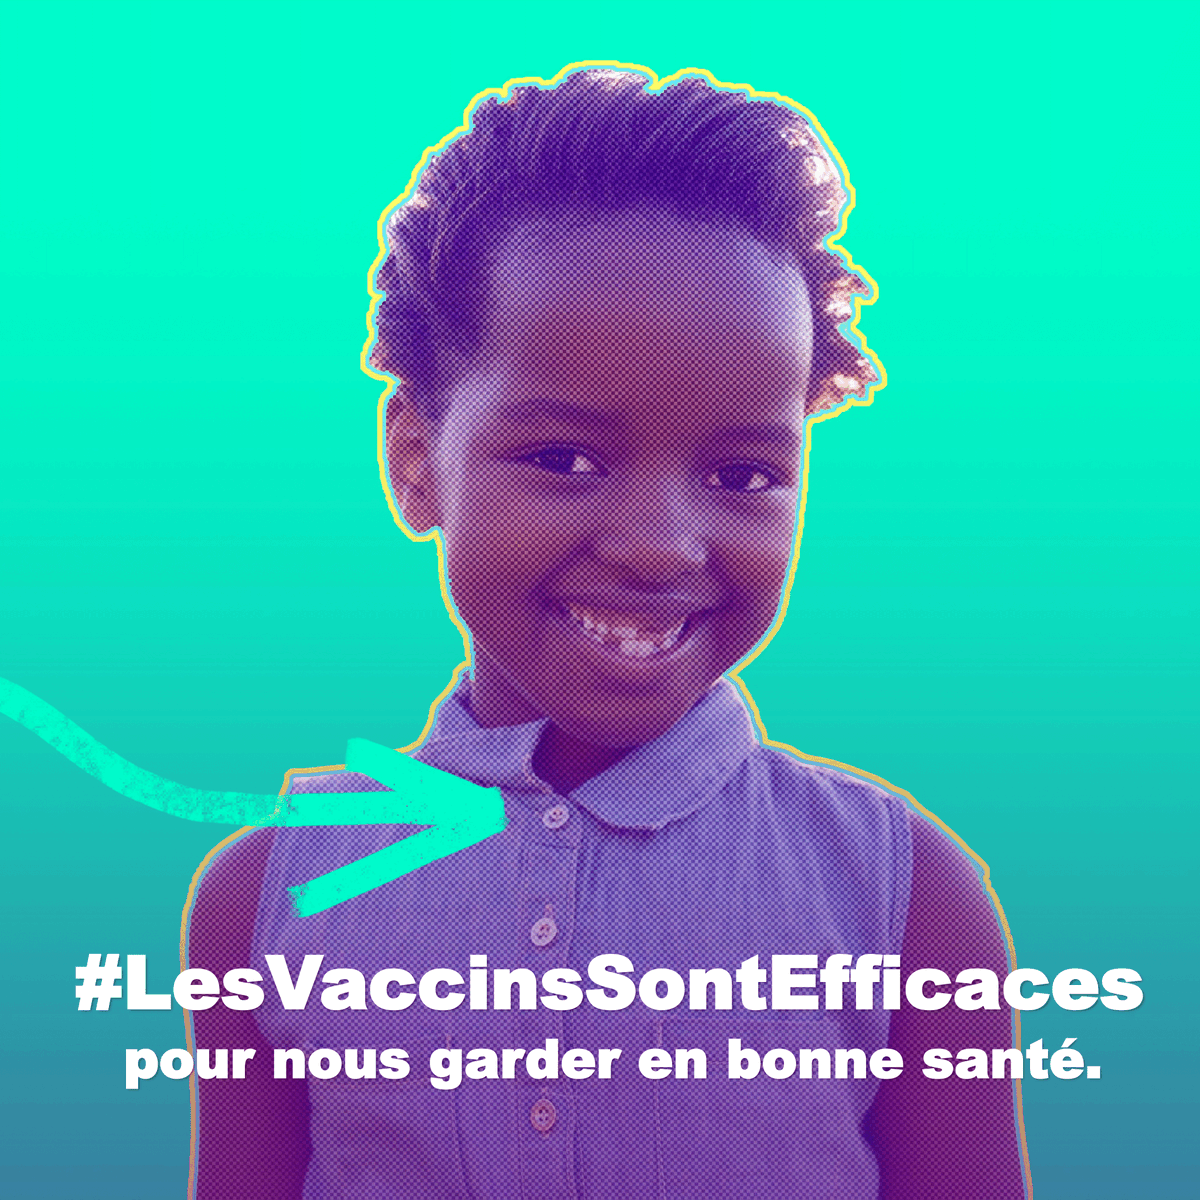 La santé et le bien-être de votre enfant dépendent de vous, chers parents. Le #vaccin sauve des vies. Respectons le calendrier vaccinal de nos enfants ! #VaccinesWork